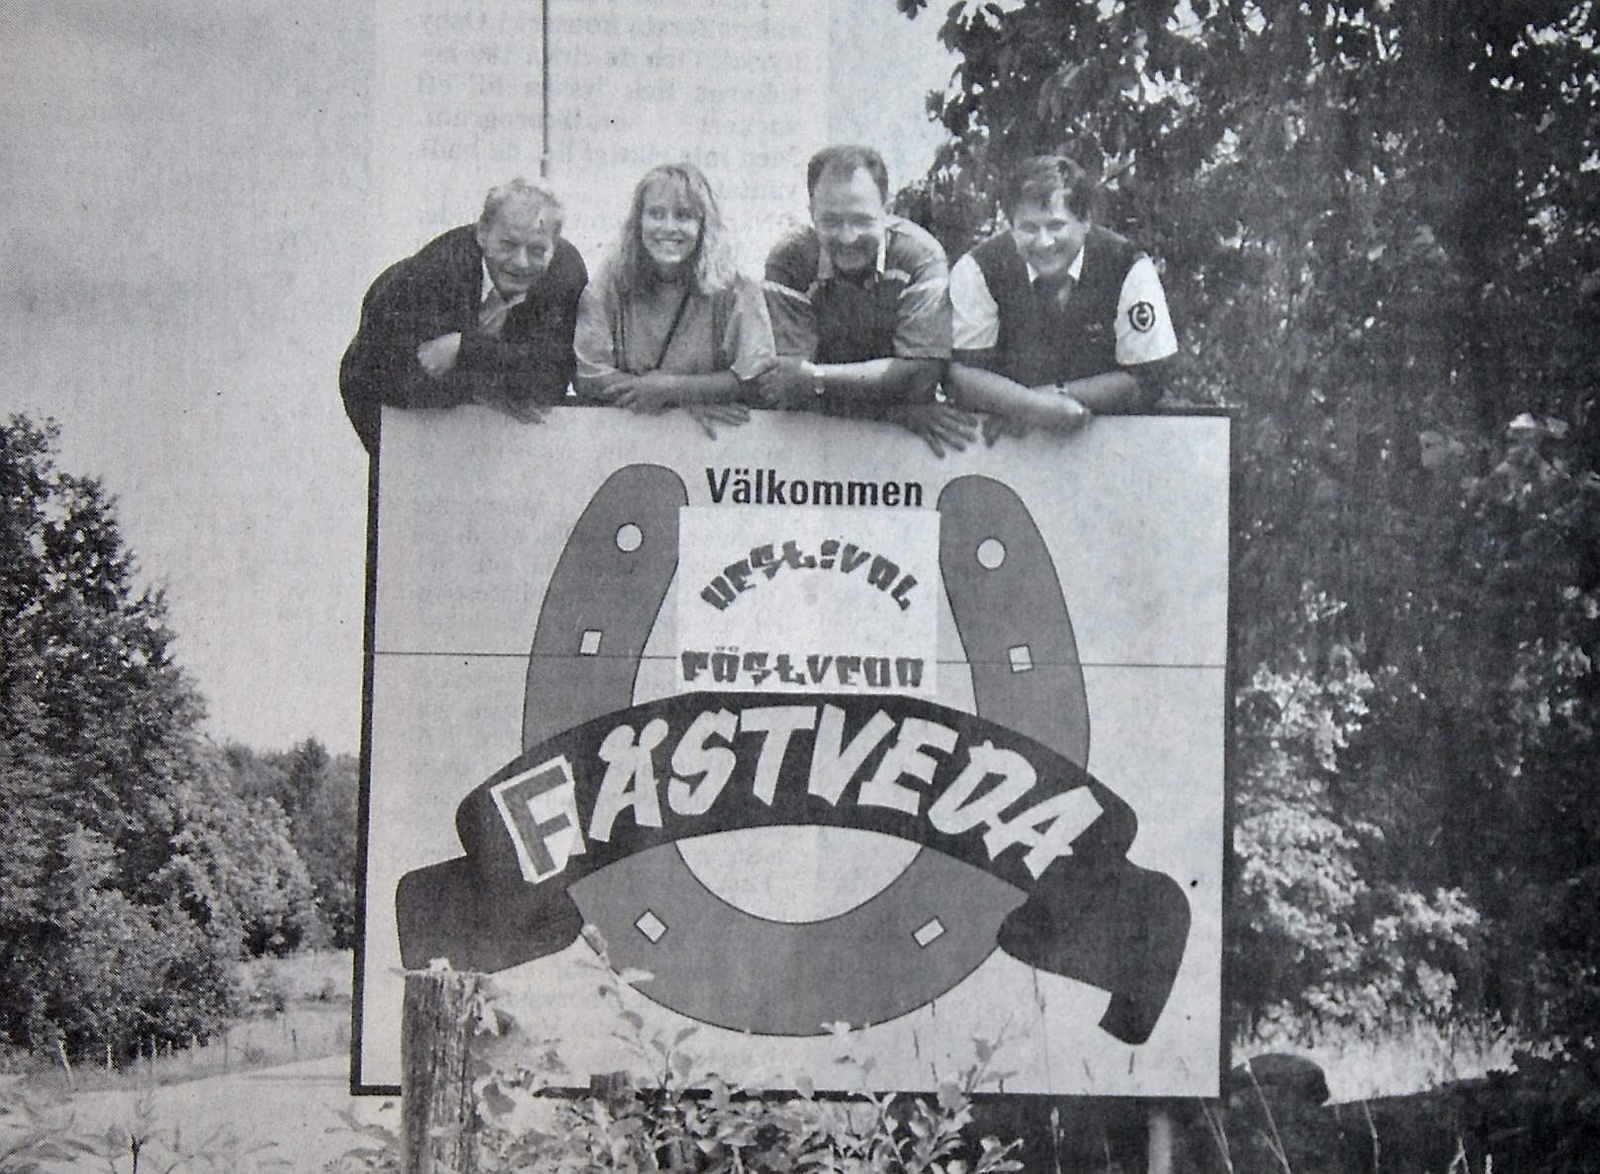 Fästveda hestival. Från vänster: borgmästare Kay Alfredsson, Cindy Nilsson, Stickan Sandberg och Bertil Svensson. Arkiv Jim Schram